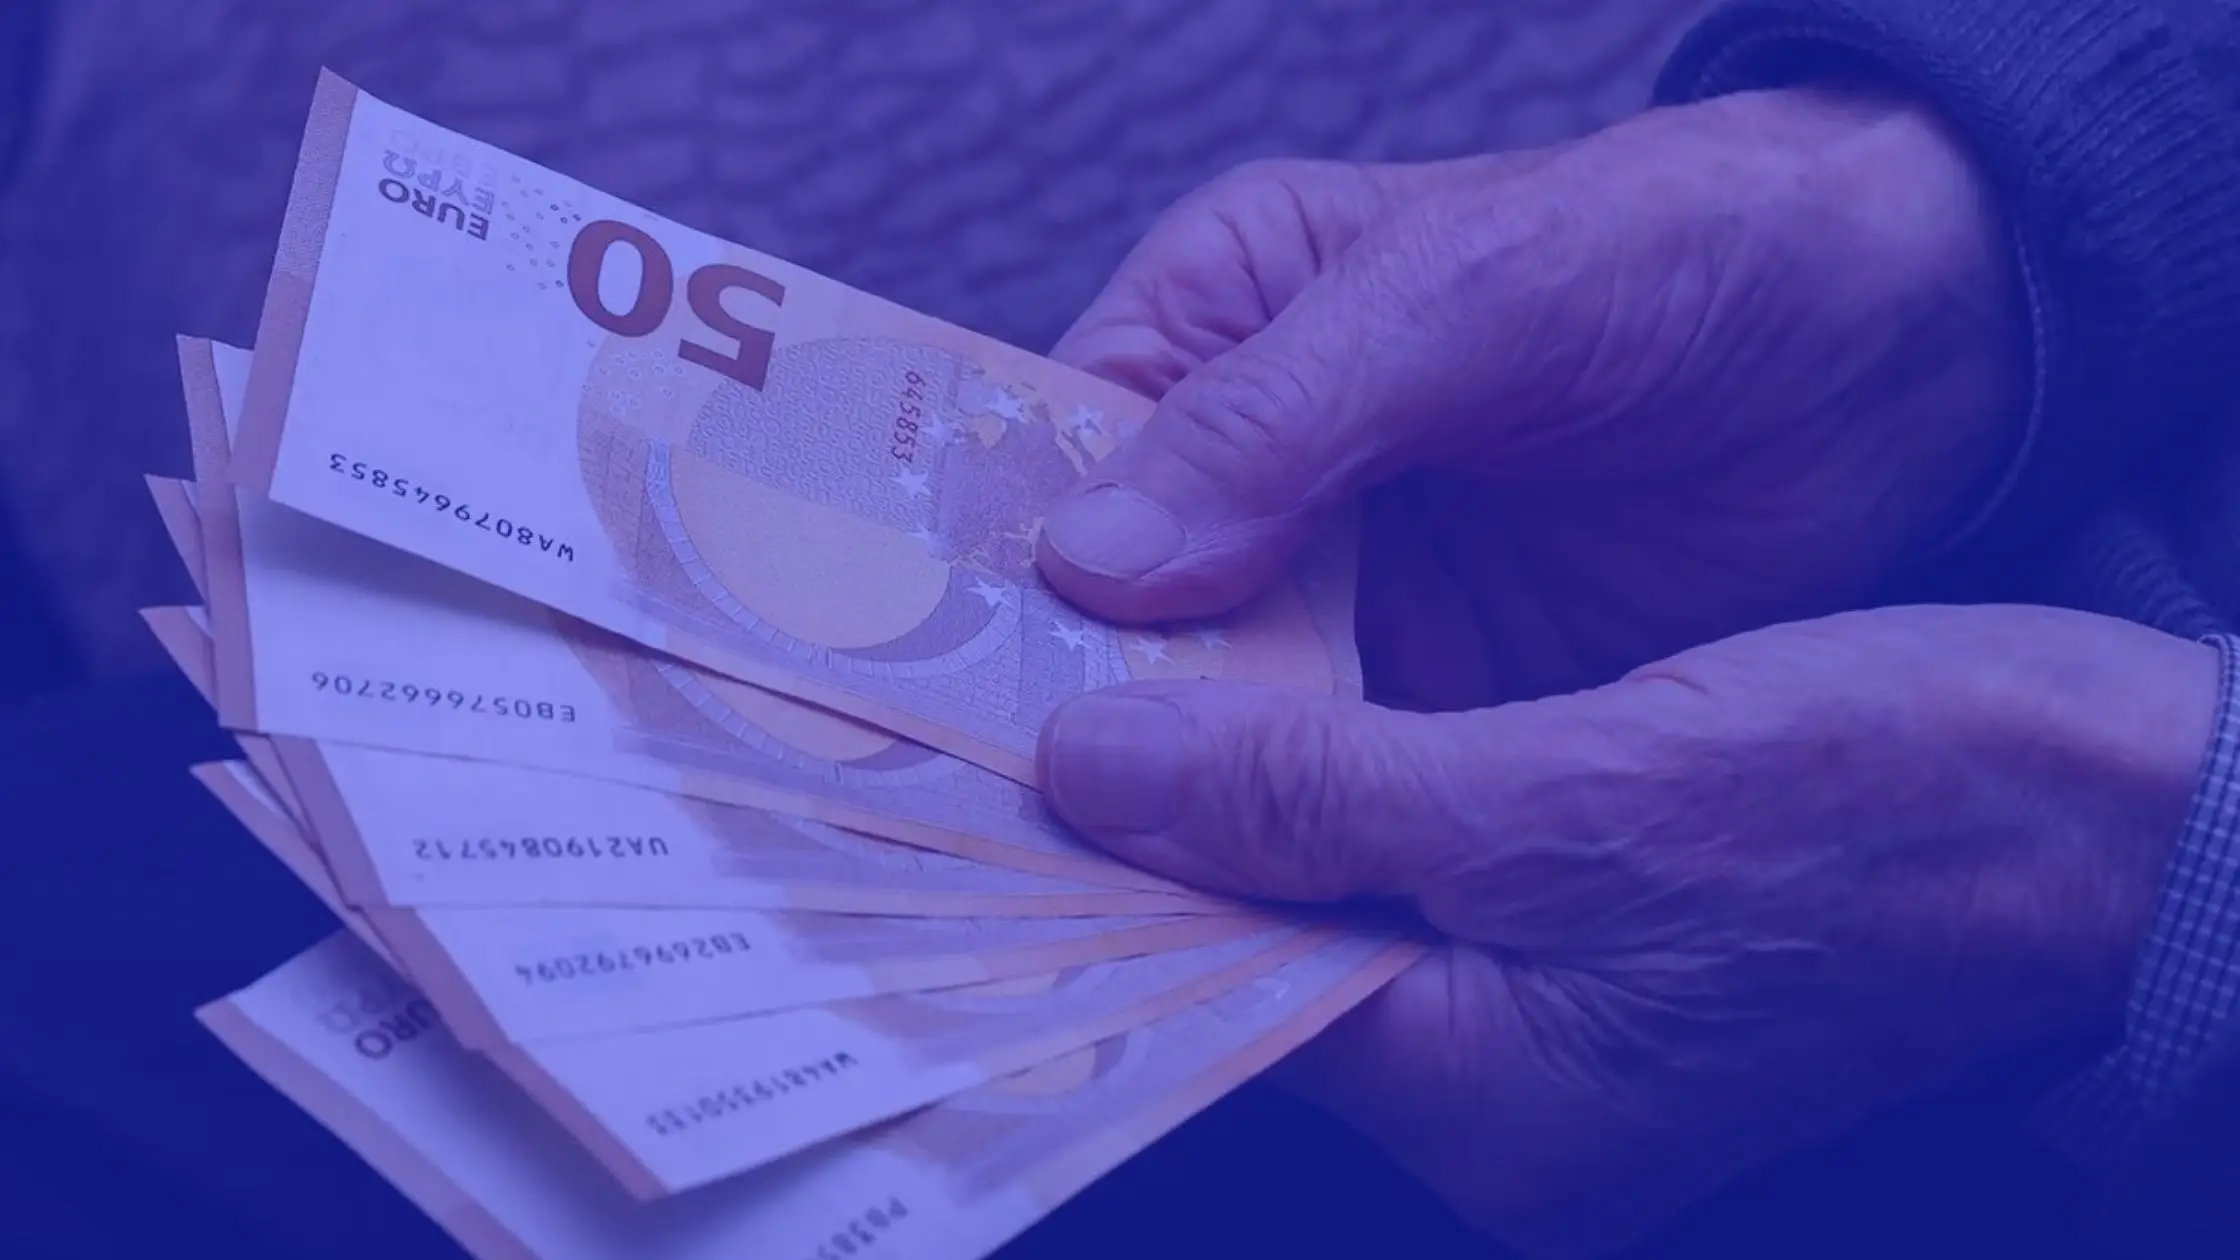 Stimare la pensione per stipendio di 2000 euro